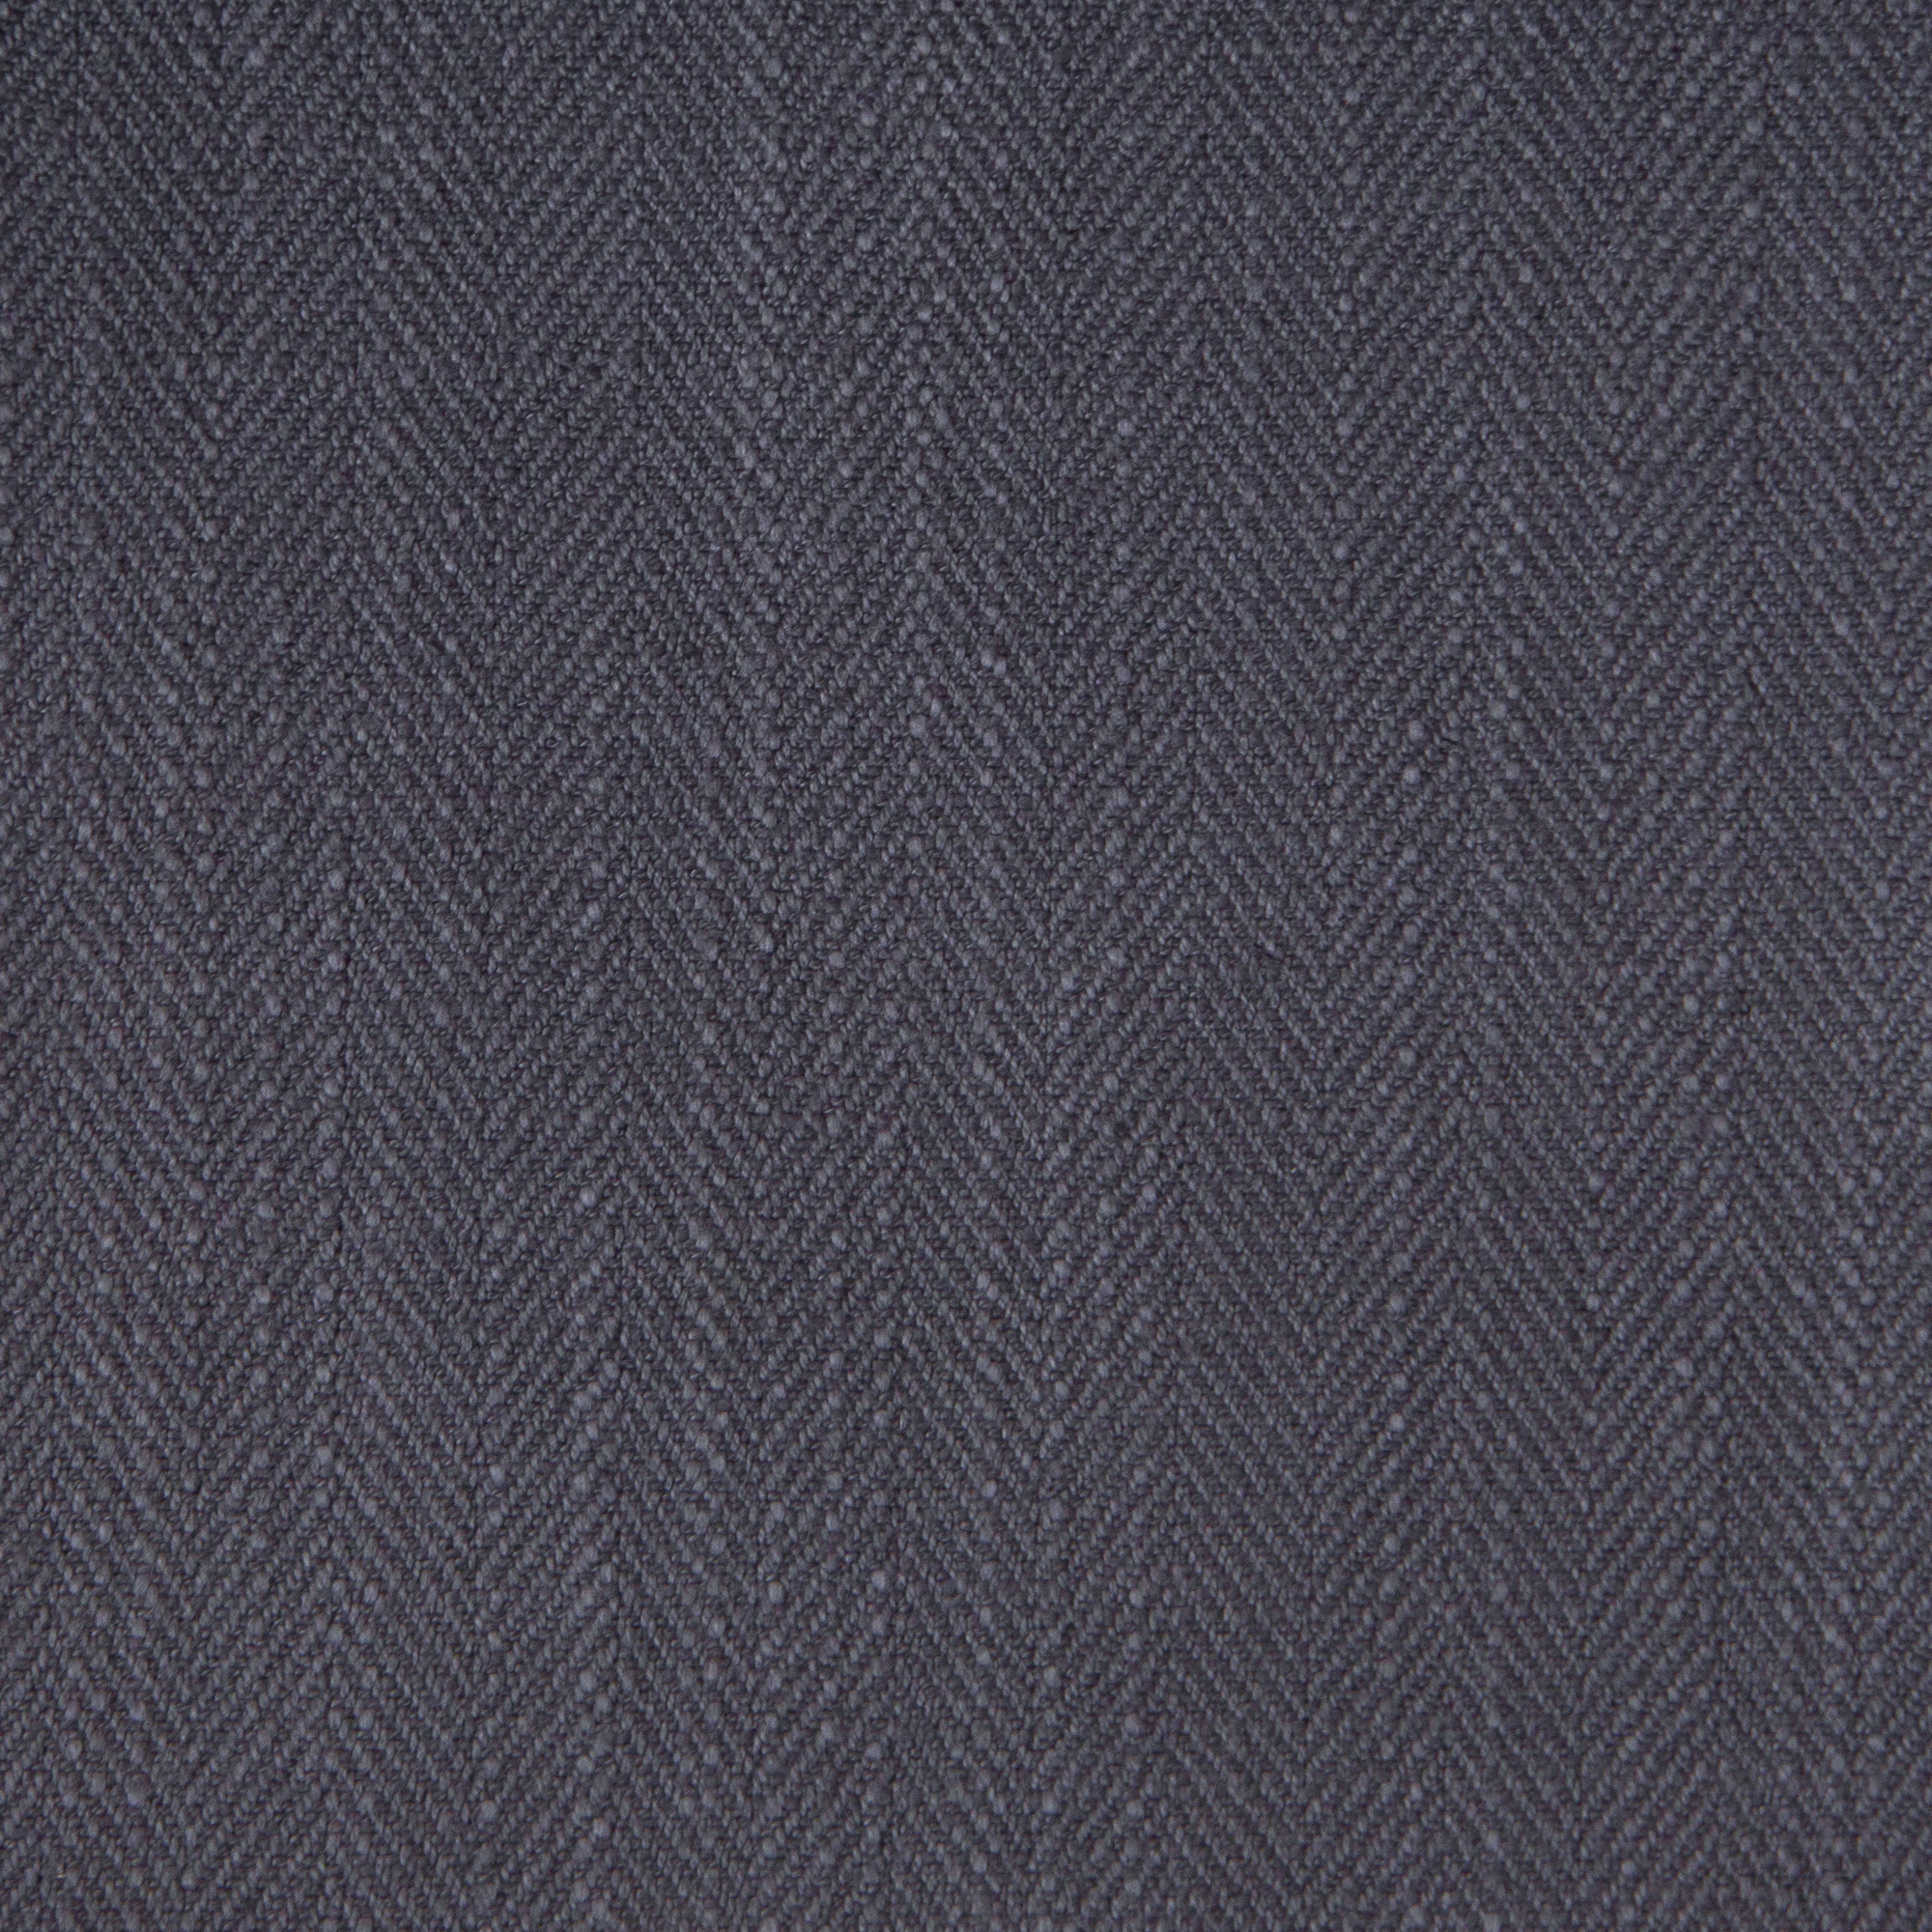 Gir Steel Cotton Linen Blend  Fabric Swatch 6" x 6"